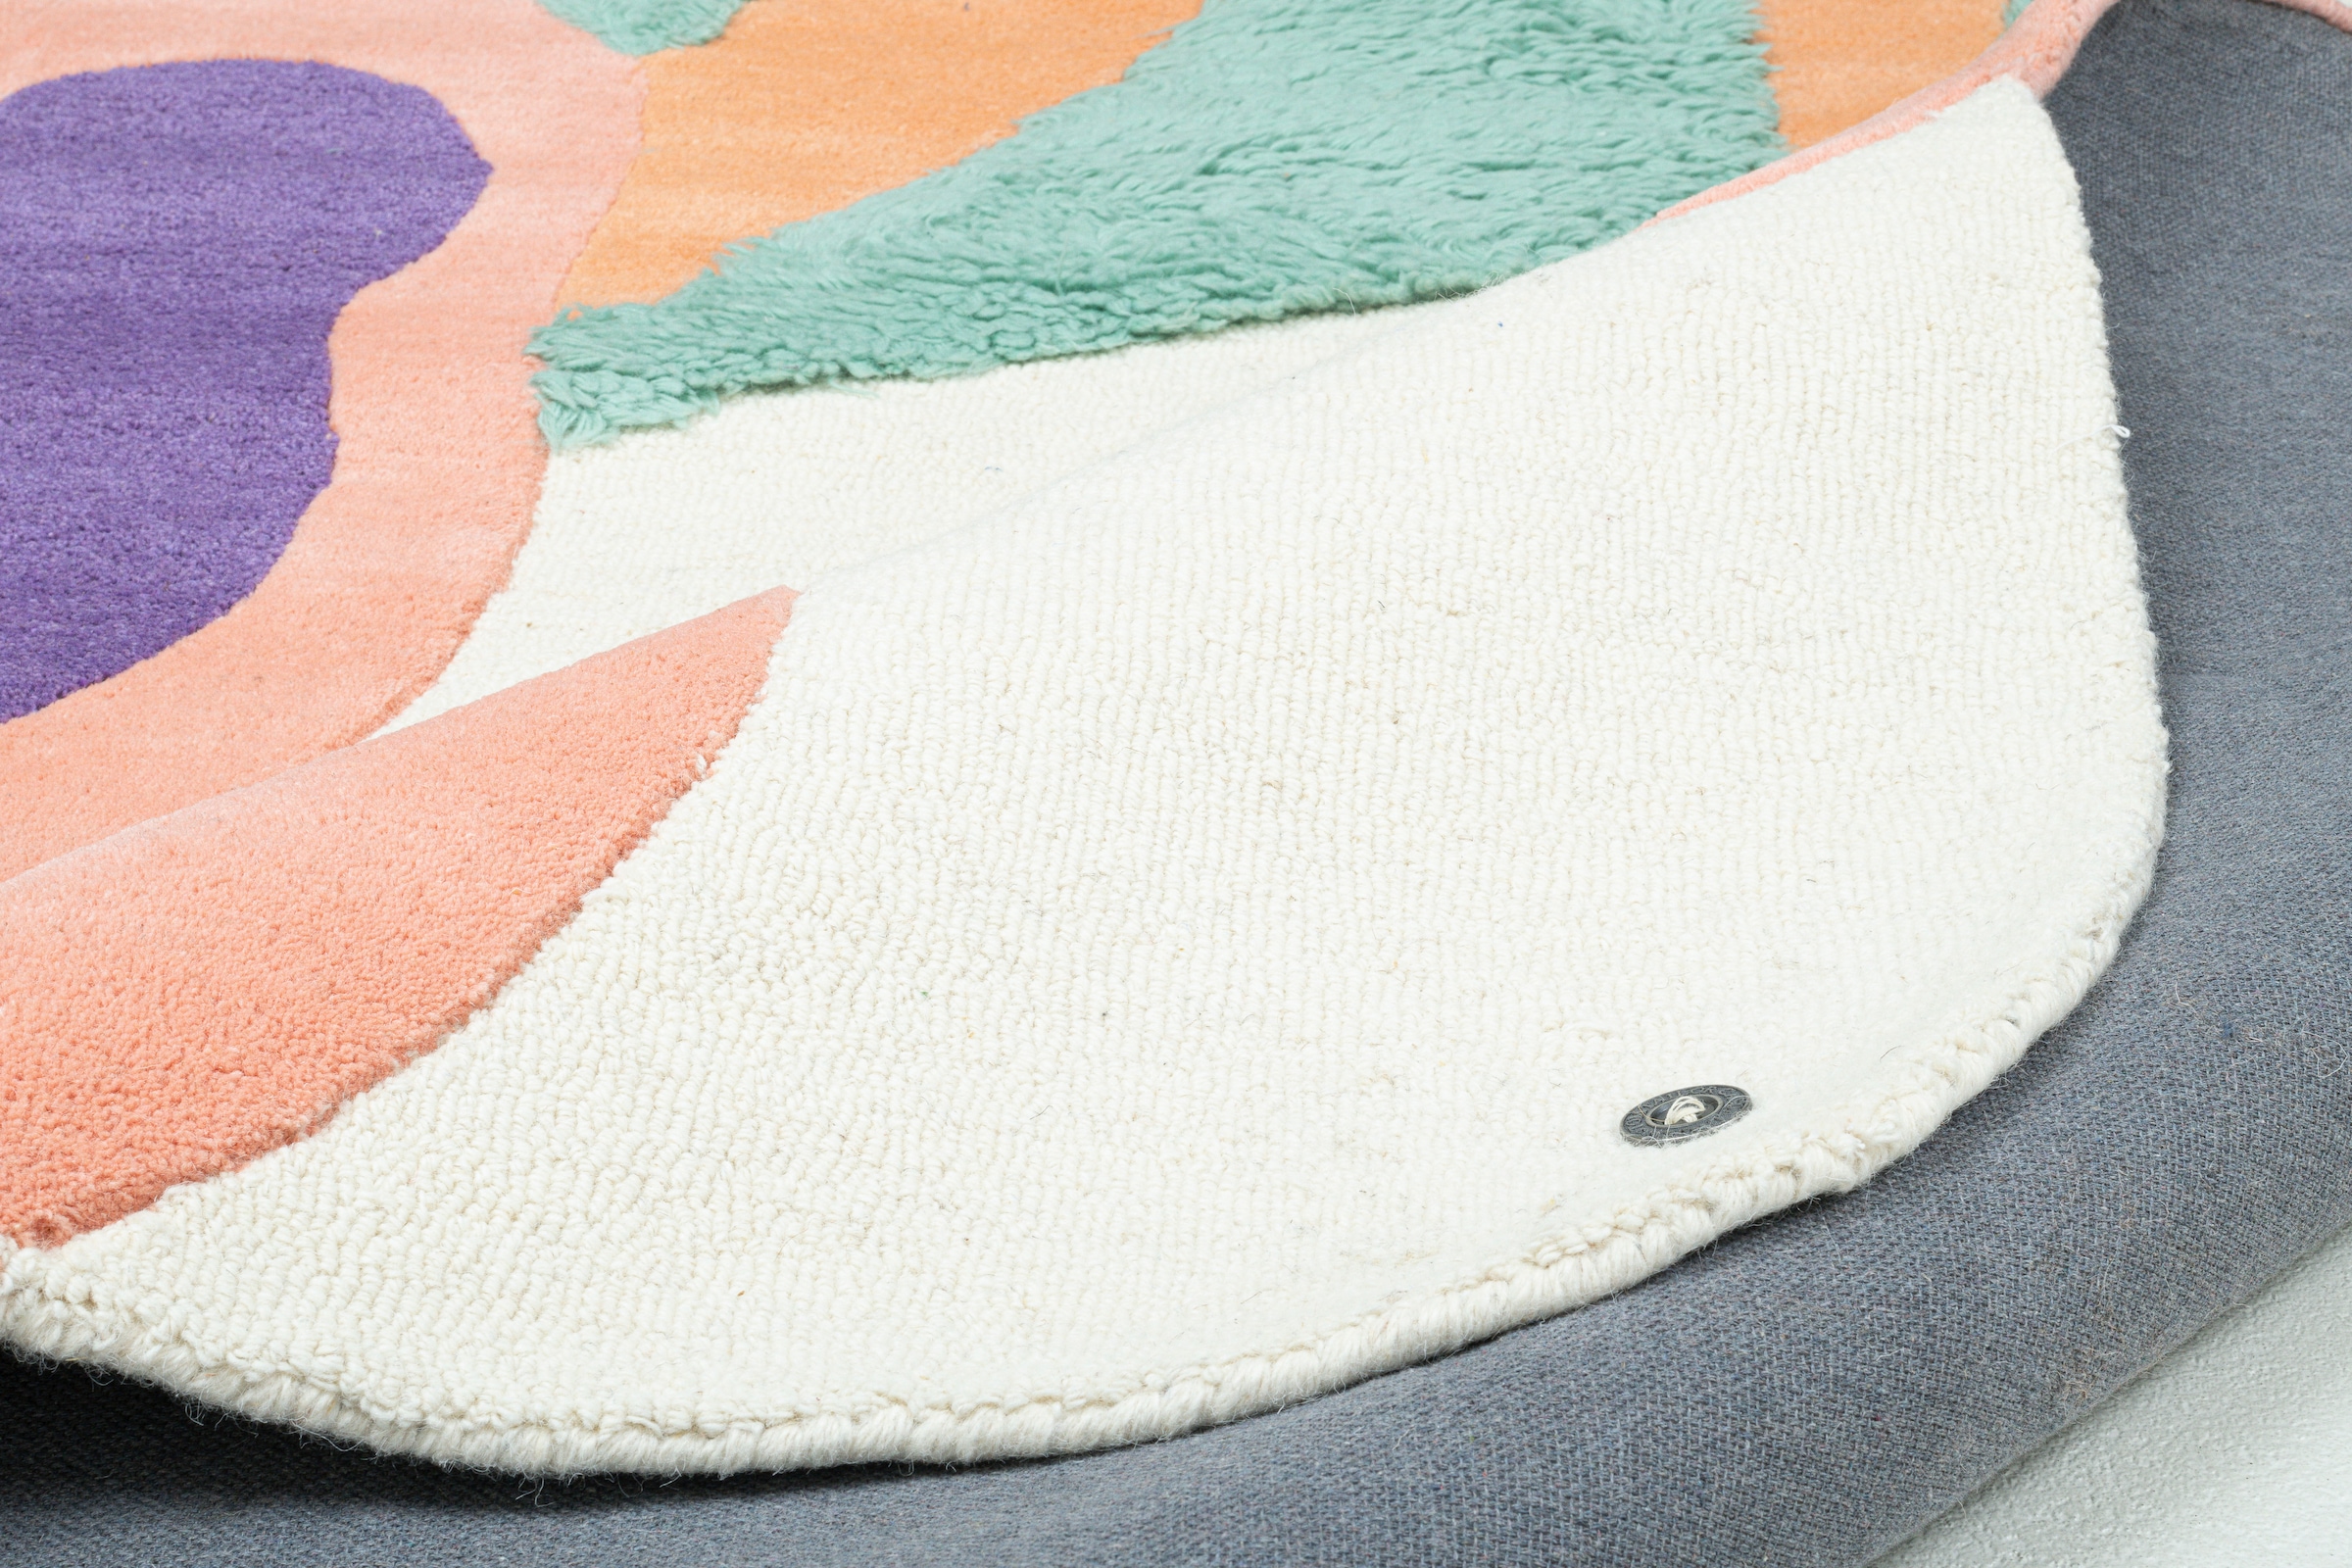 TOM TAILOR HOME Designteppich »Bings Colorful Poppy«, rechteckig, Kurzflor, reine Wolle, modernes Design, abstrakte Blumen